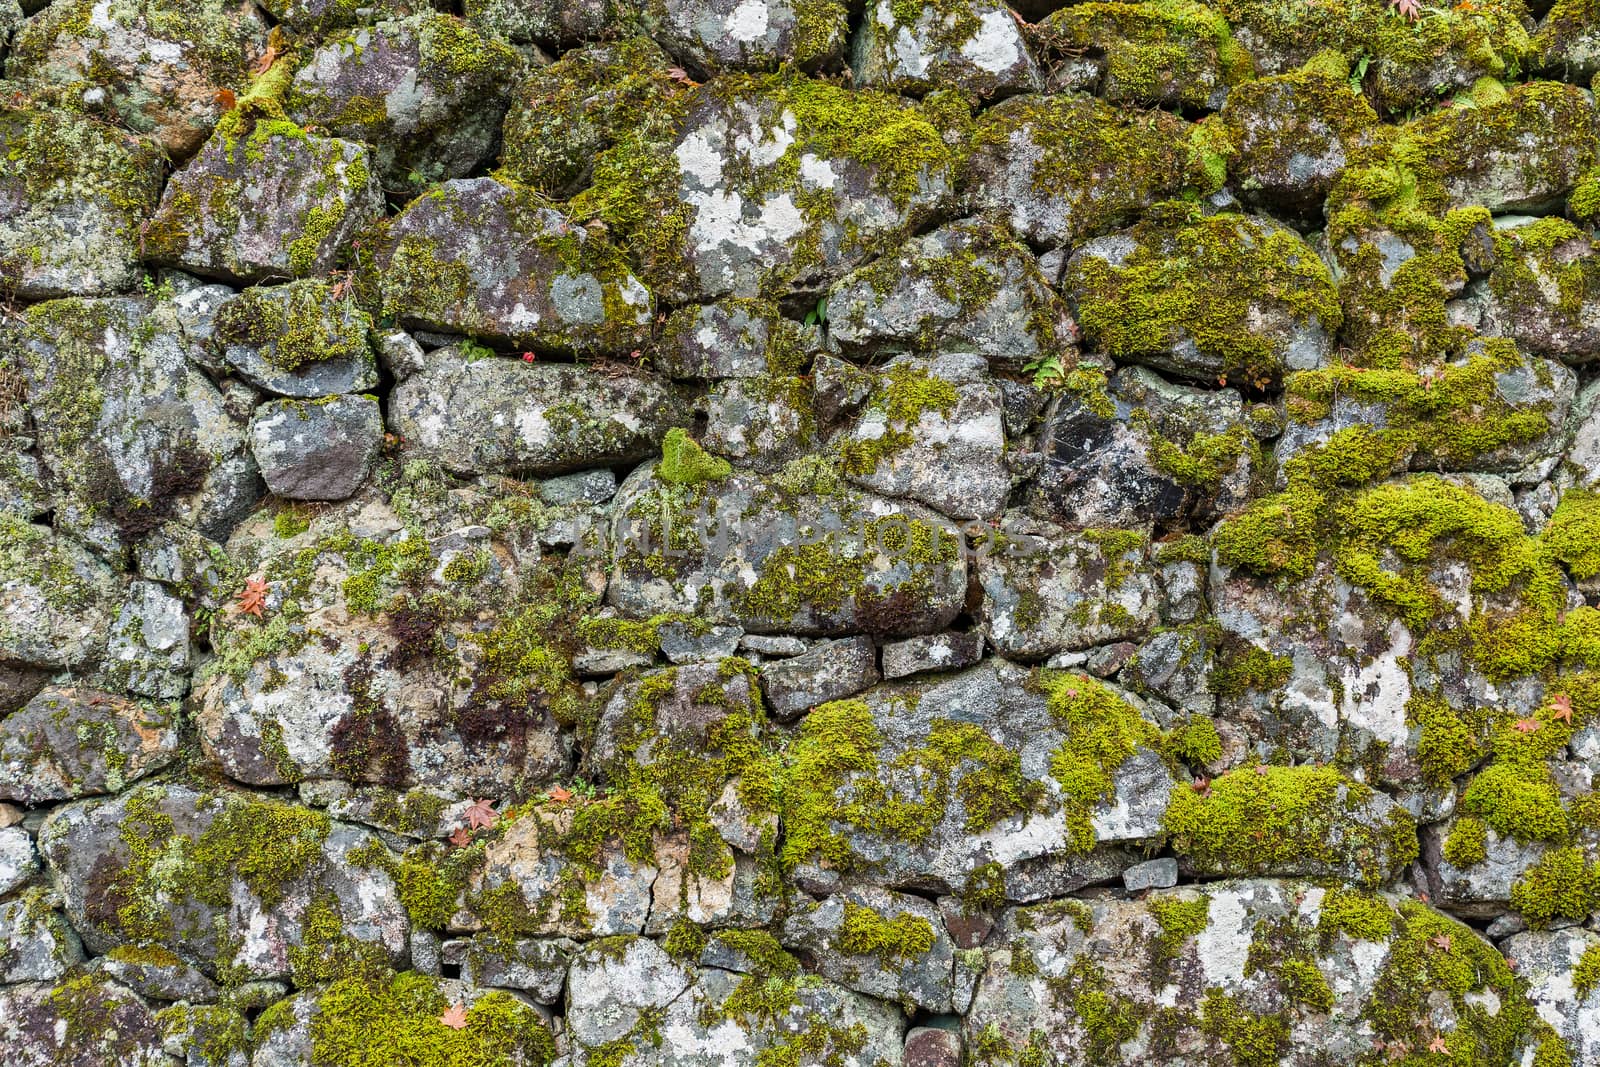 Brick wall texture with lichen